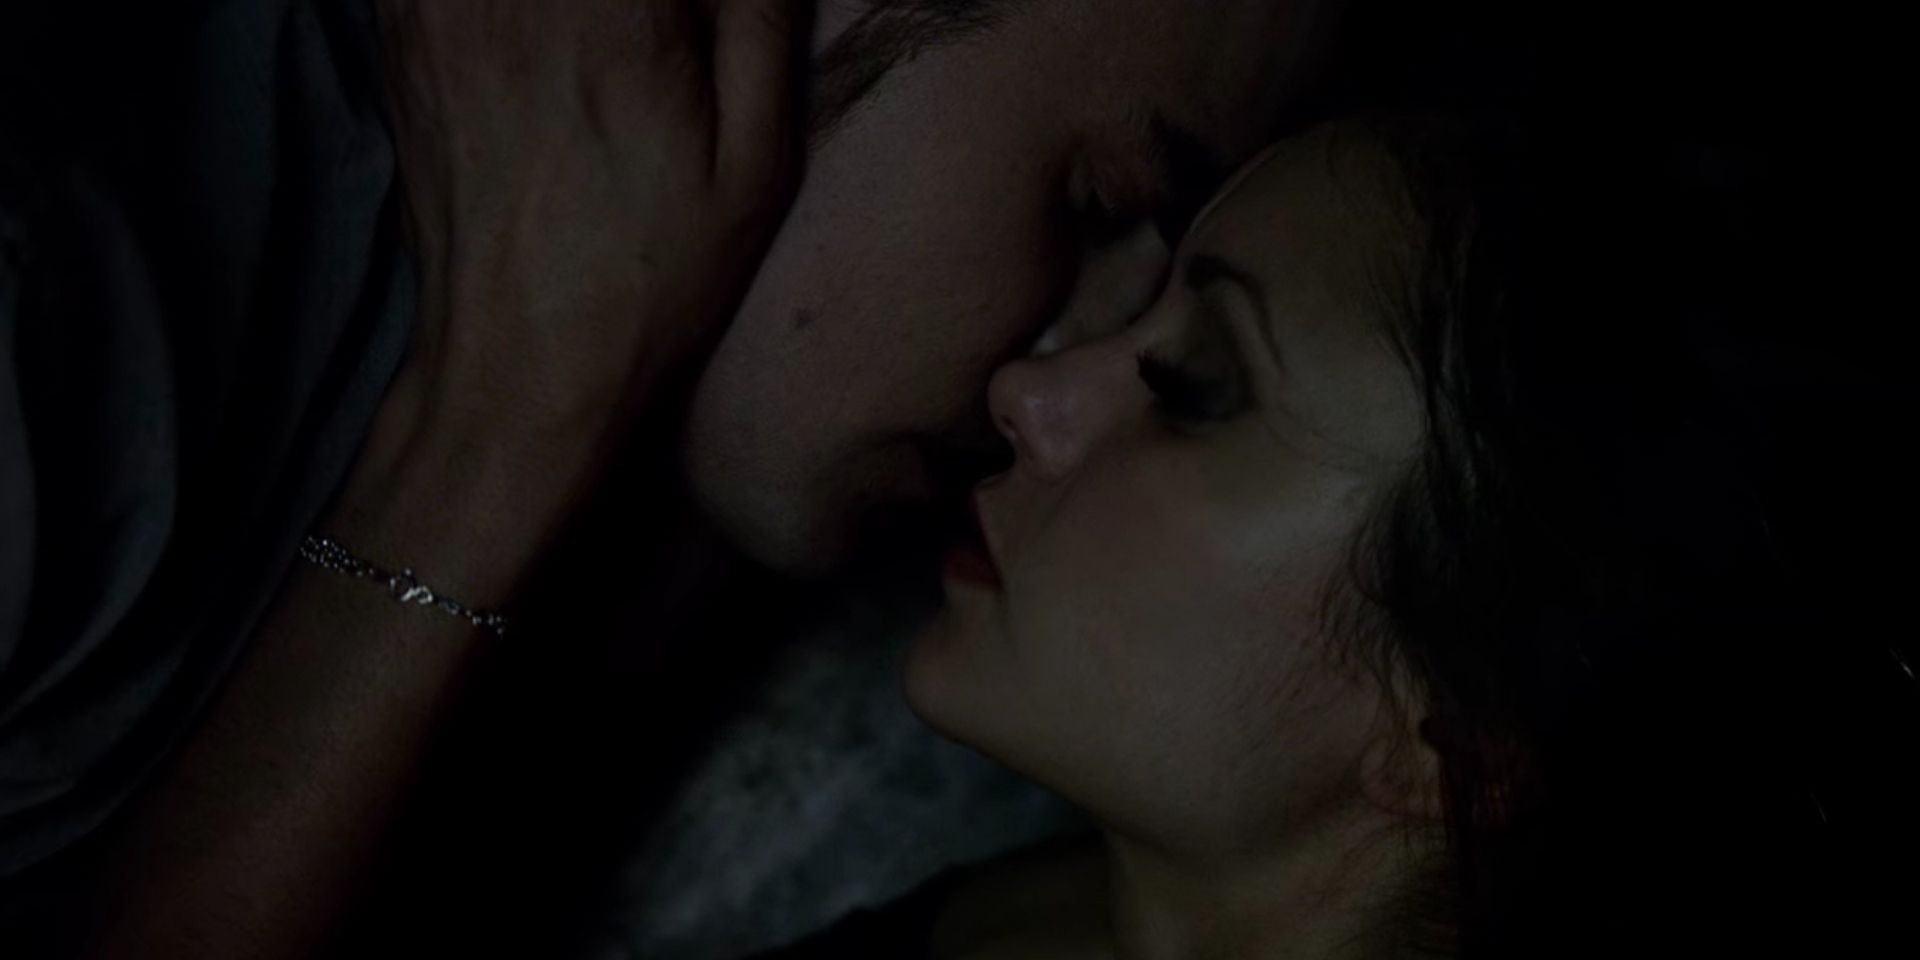 Katherine e Stefan se beijando em um caixão em The Vampire Diaries.